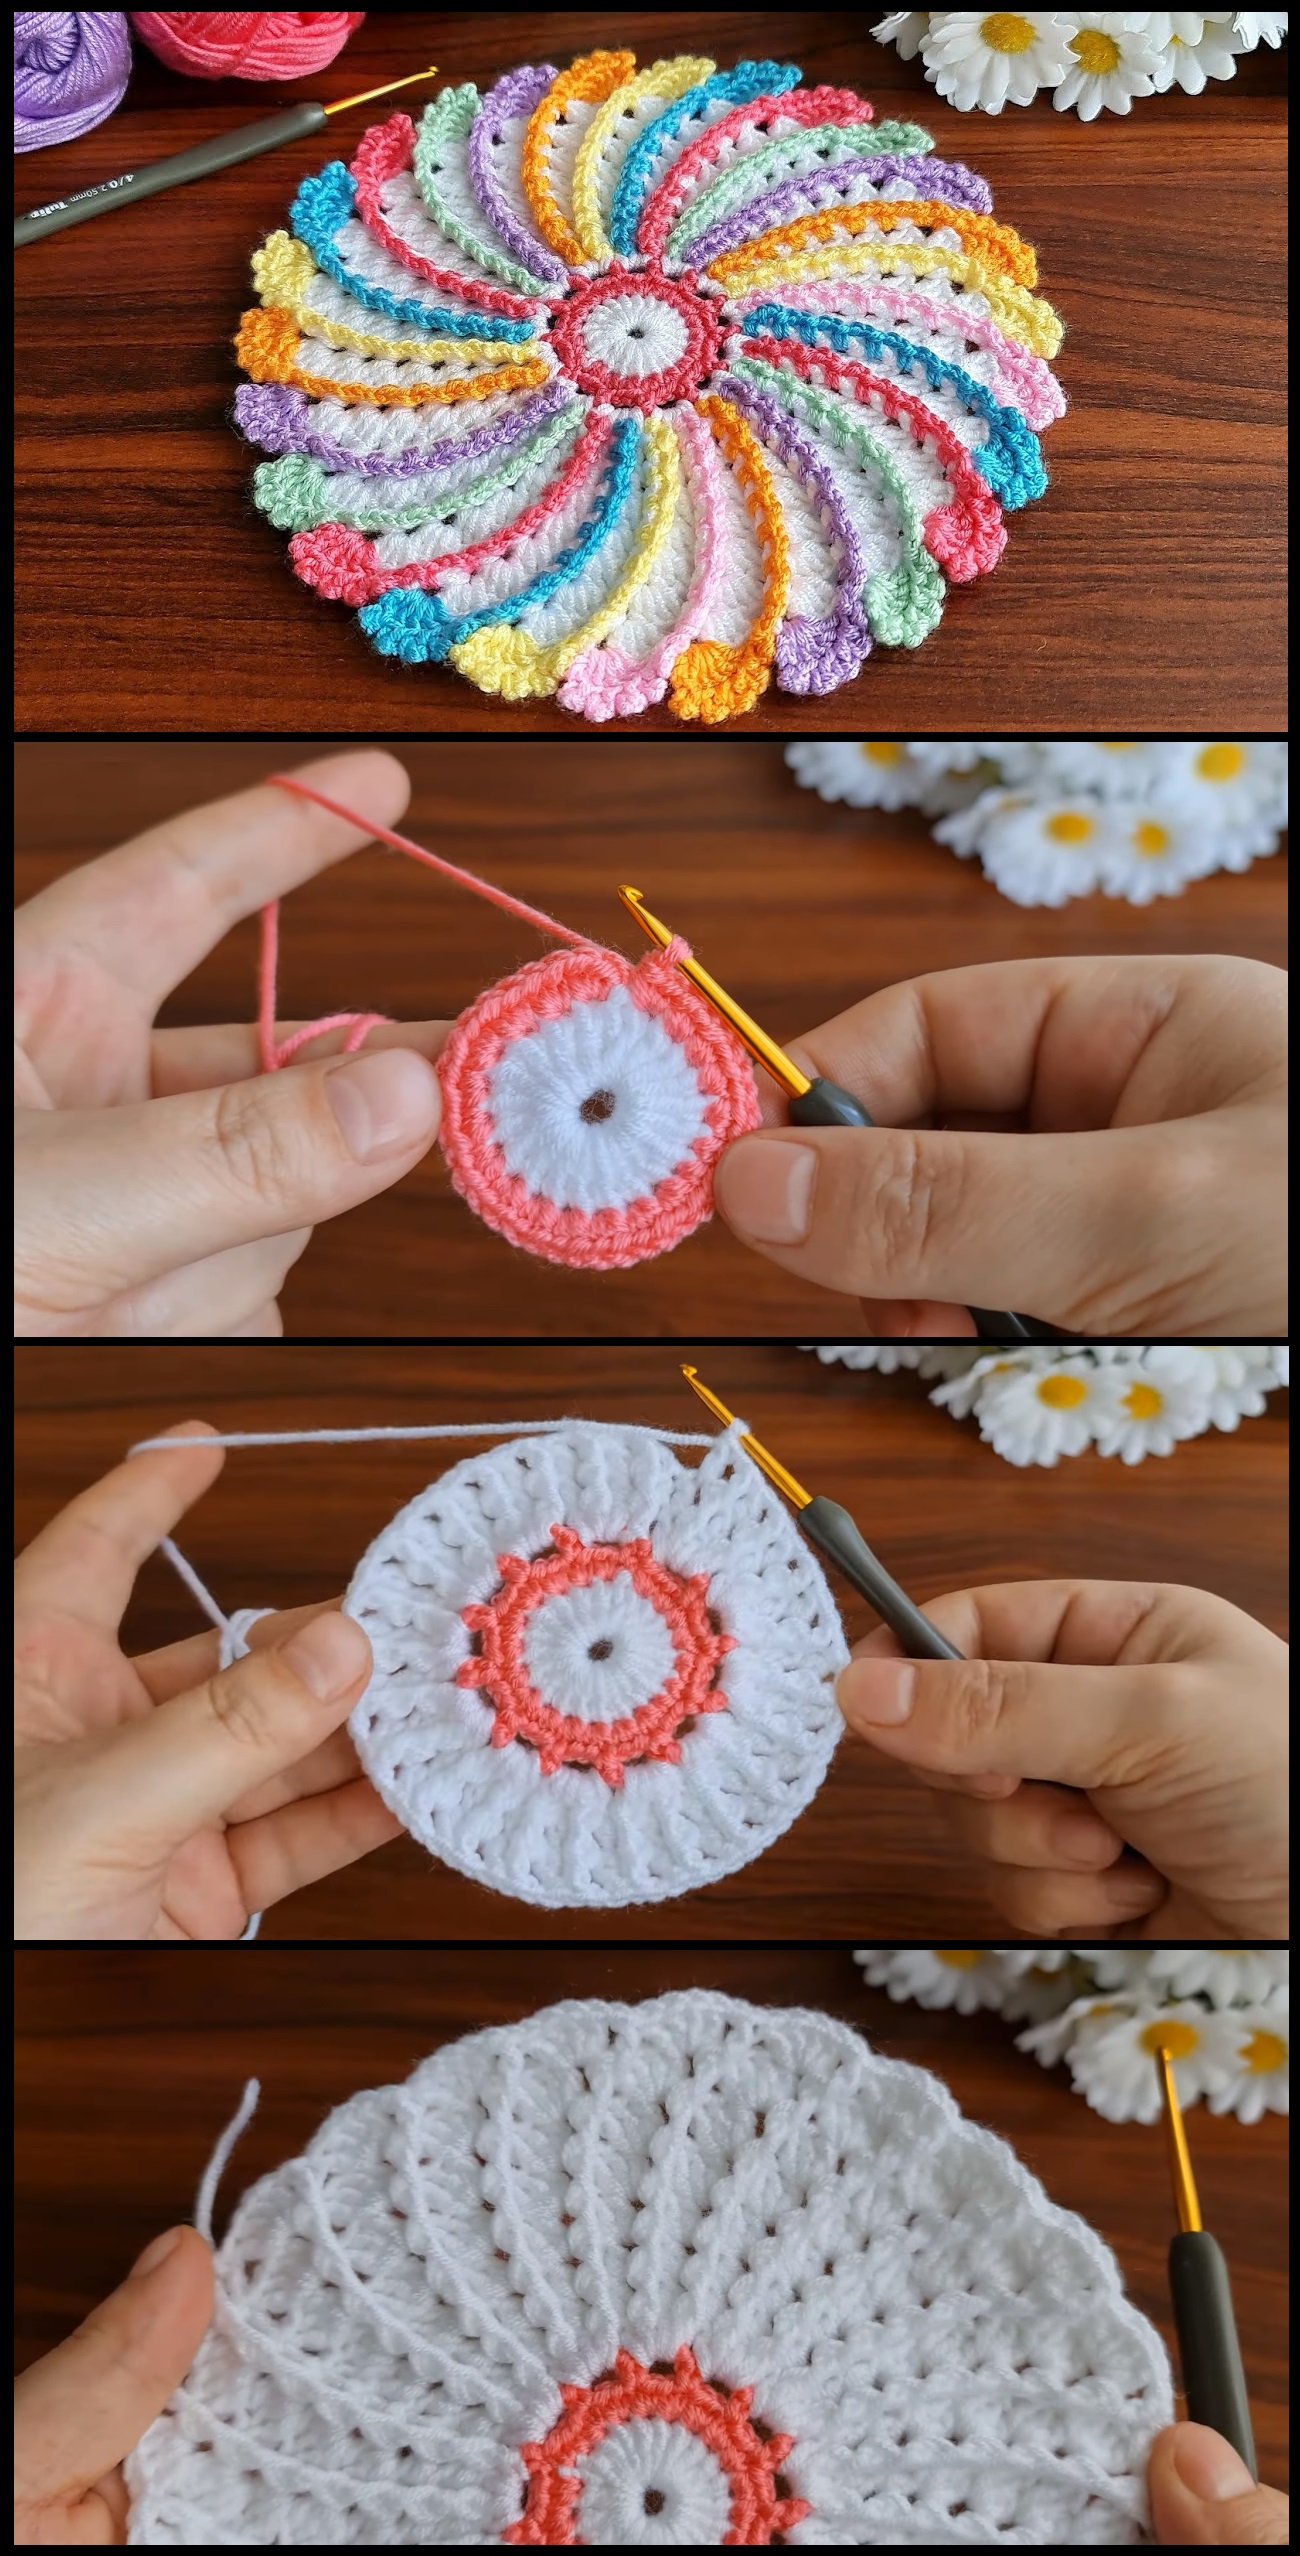 Blooms of Joy: Crochet 3D Flower Motif